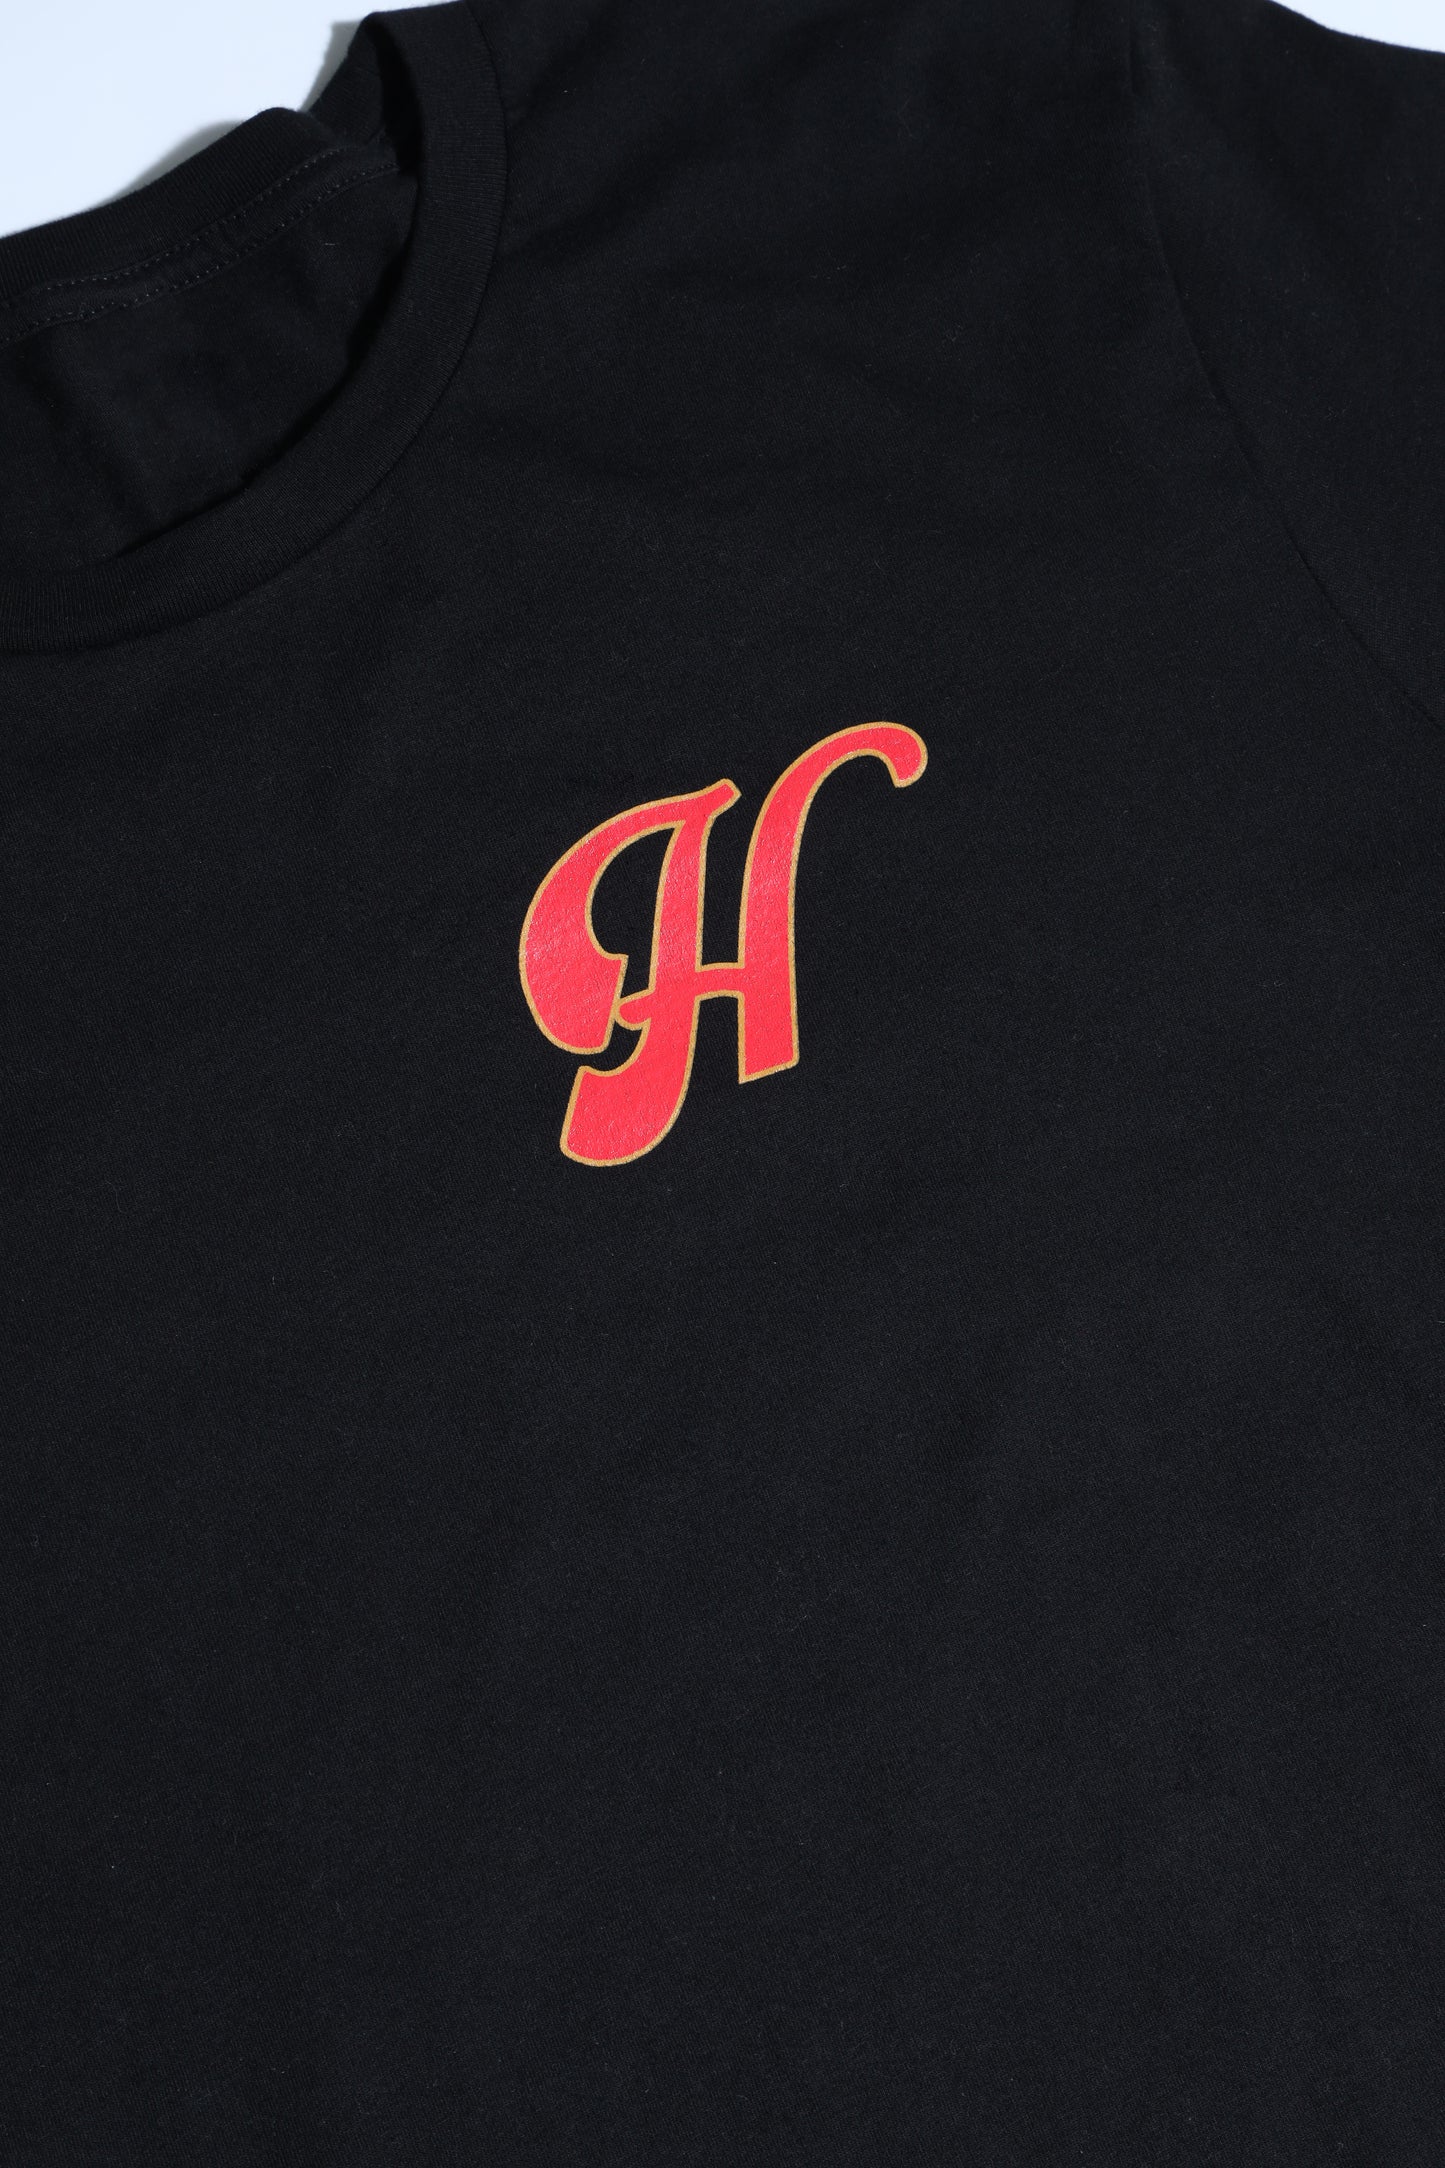 humo sol tshirt black H logo close up